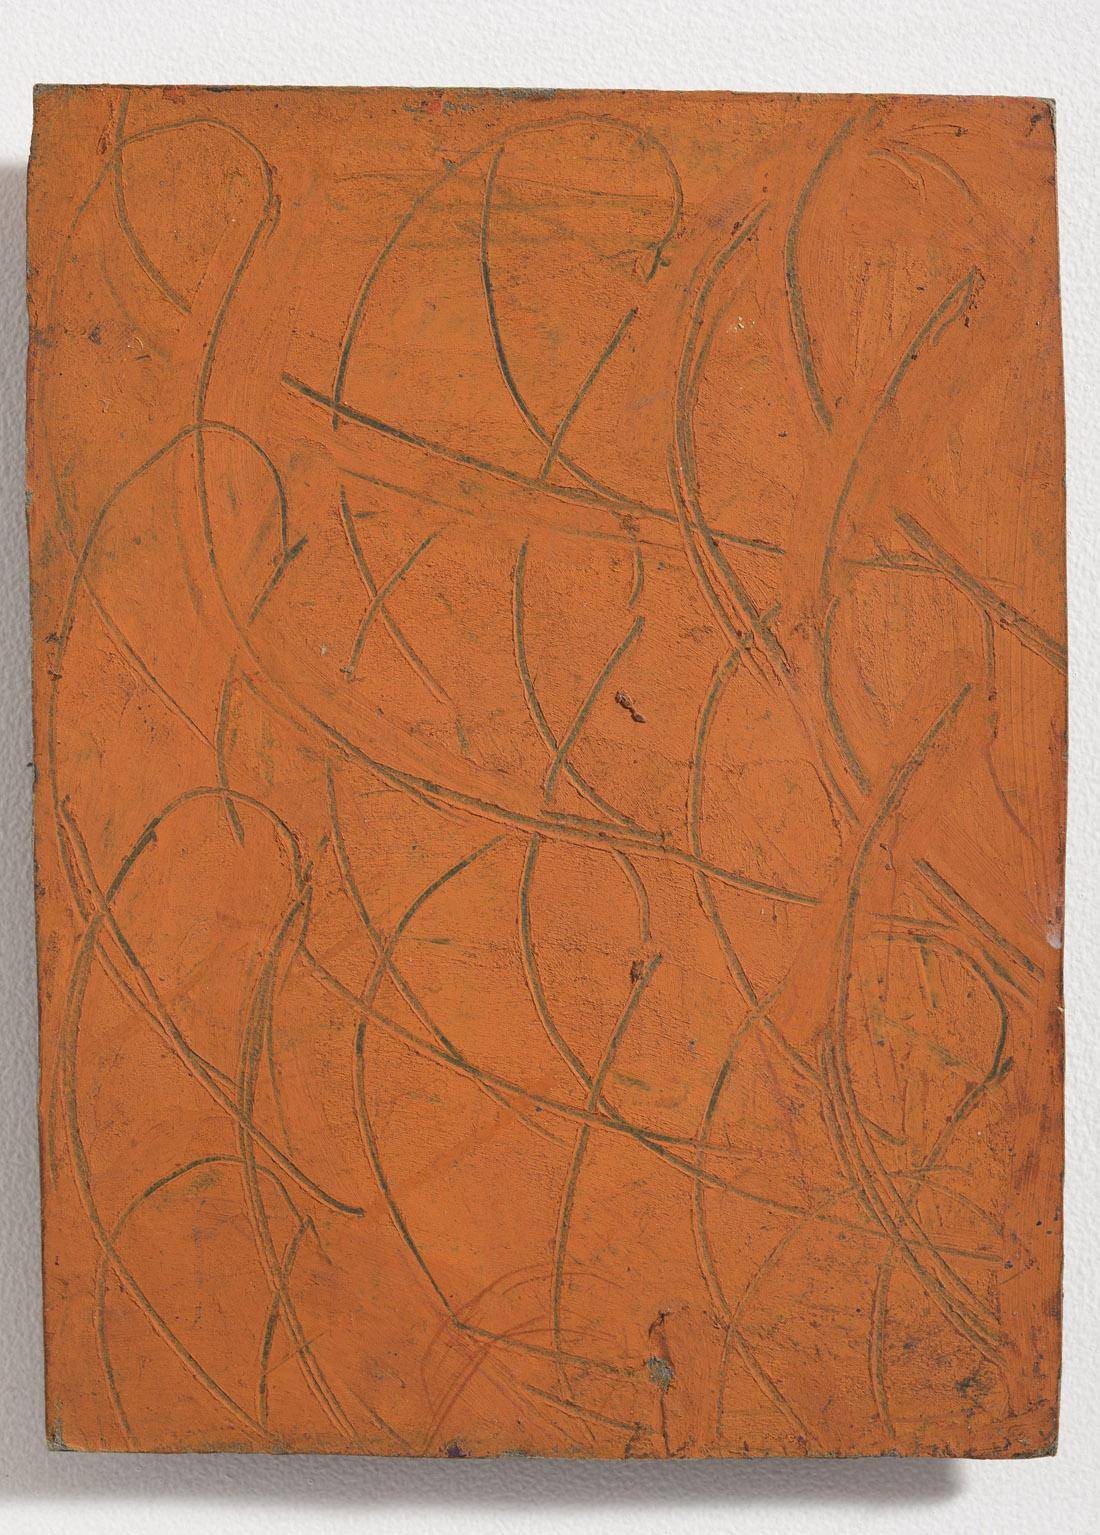 Ceibo en fondo naranja, 1985. Américo Spósito (1924-2005). Óleo sobre cartón.  23,5 x 18 cm. Nº inv. 4974.